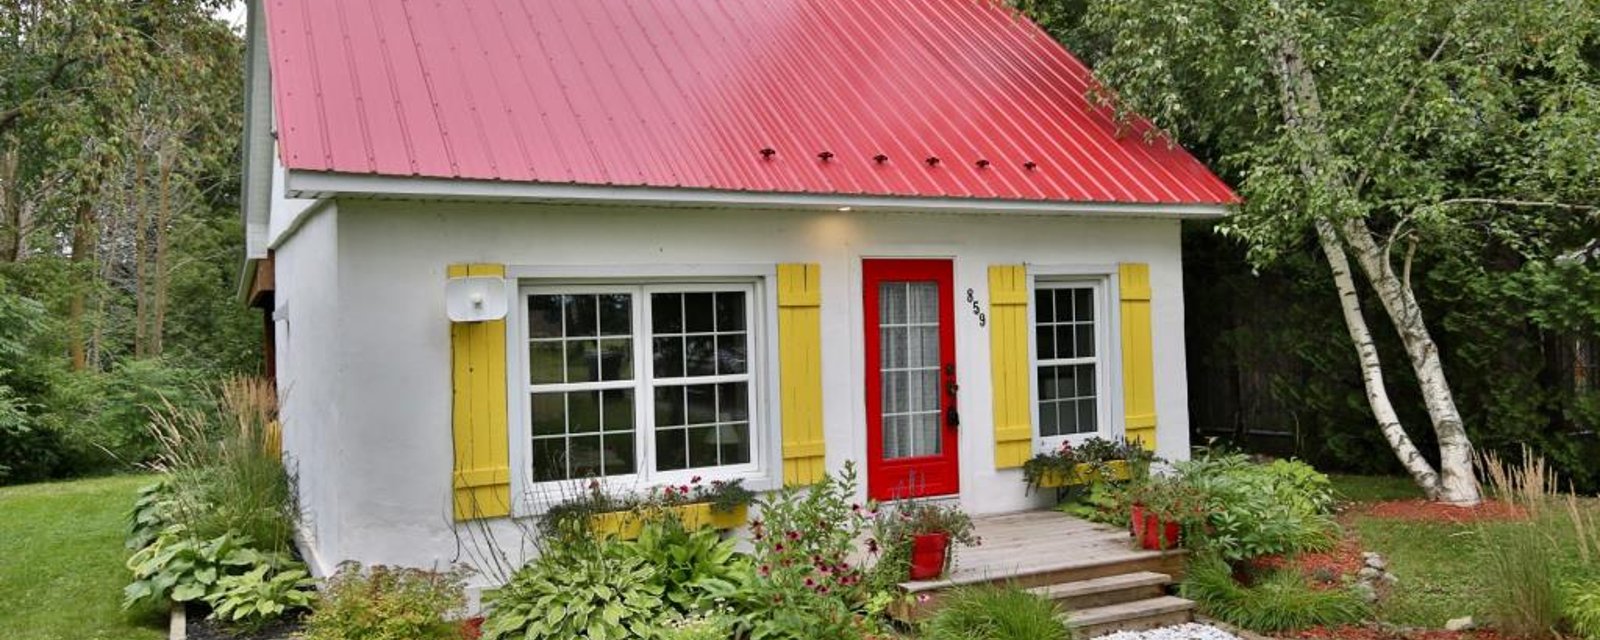 Joli cottage à 279 000$ sis sur un terrain champêtre de plus de 33 000 pi²